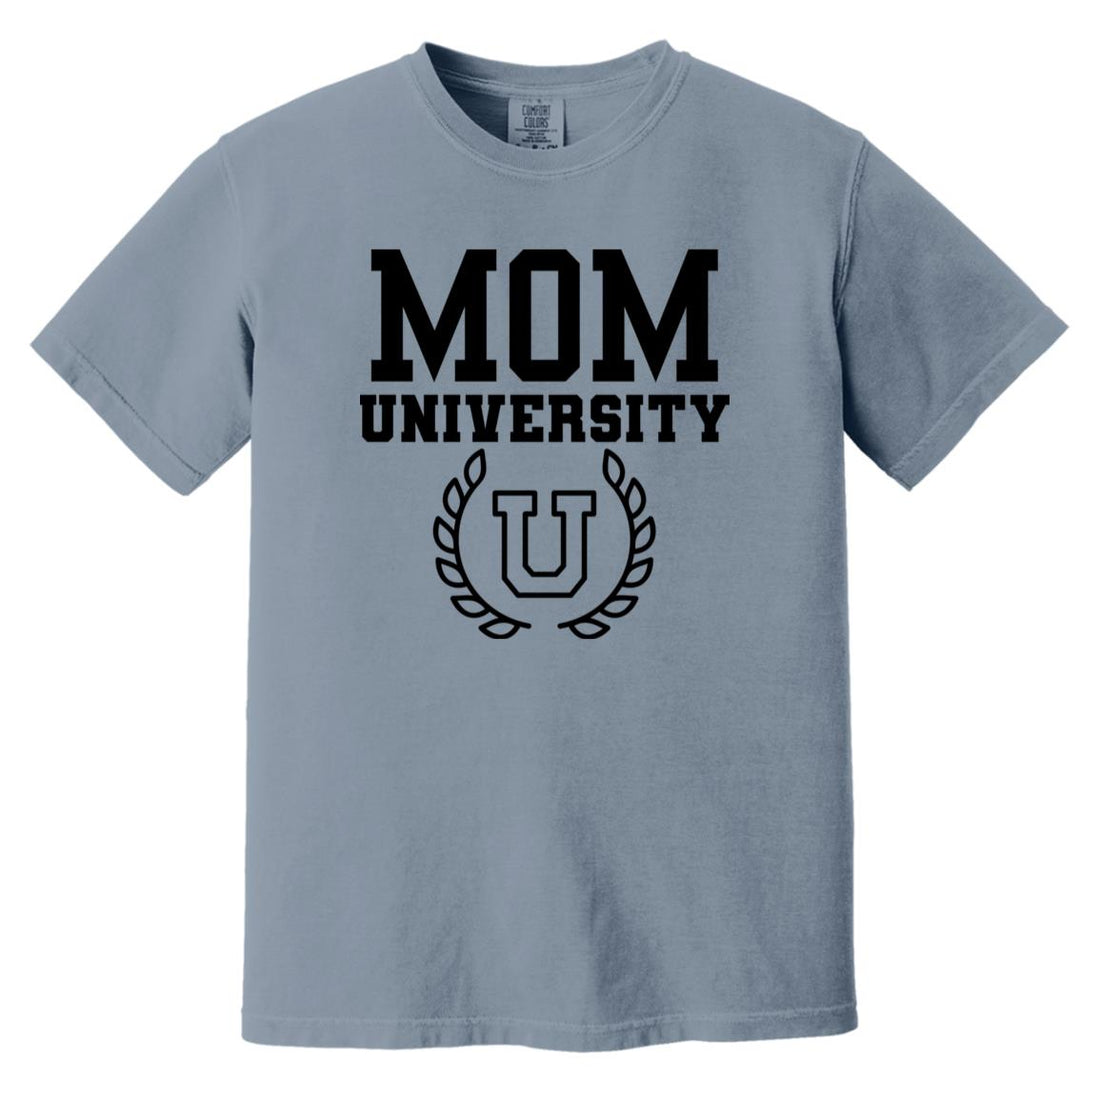 Mom University - T-Shirts - Positively Sassy - Mom University